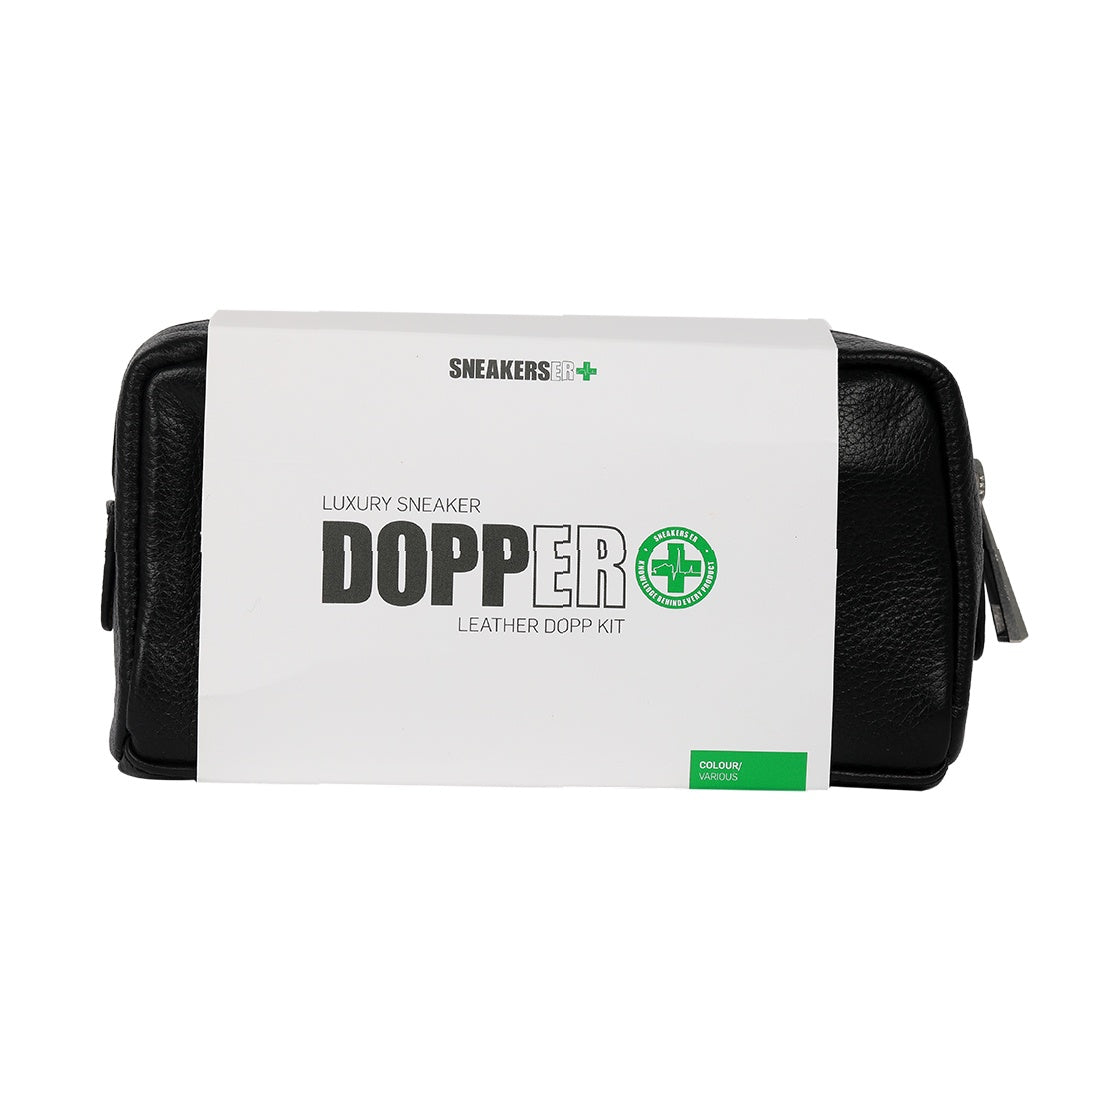 DOPPER Luxury Sneaker Leather Dopp Bag Kit